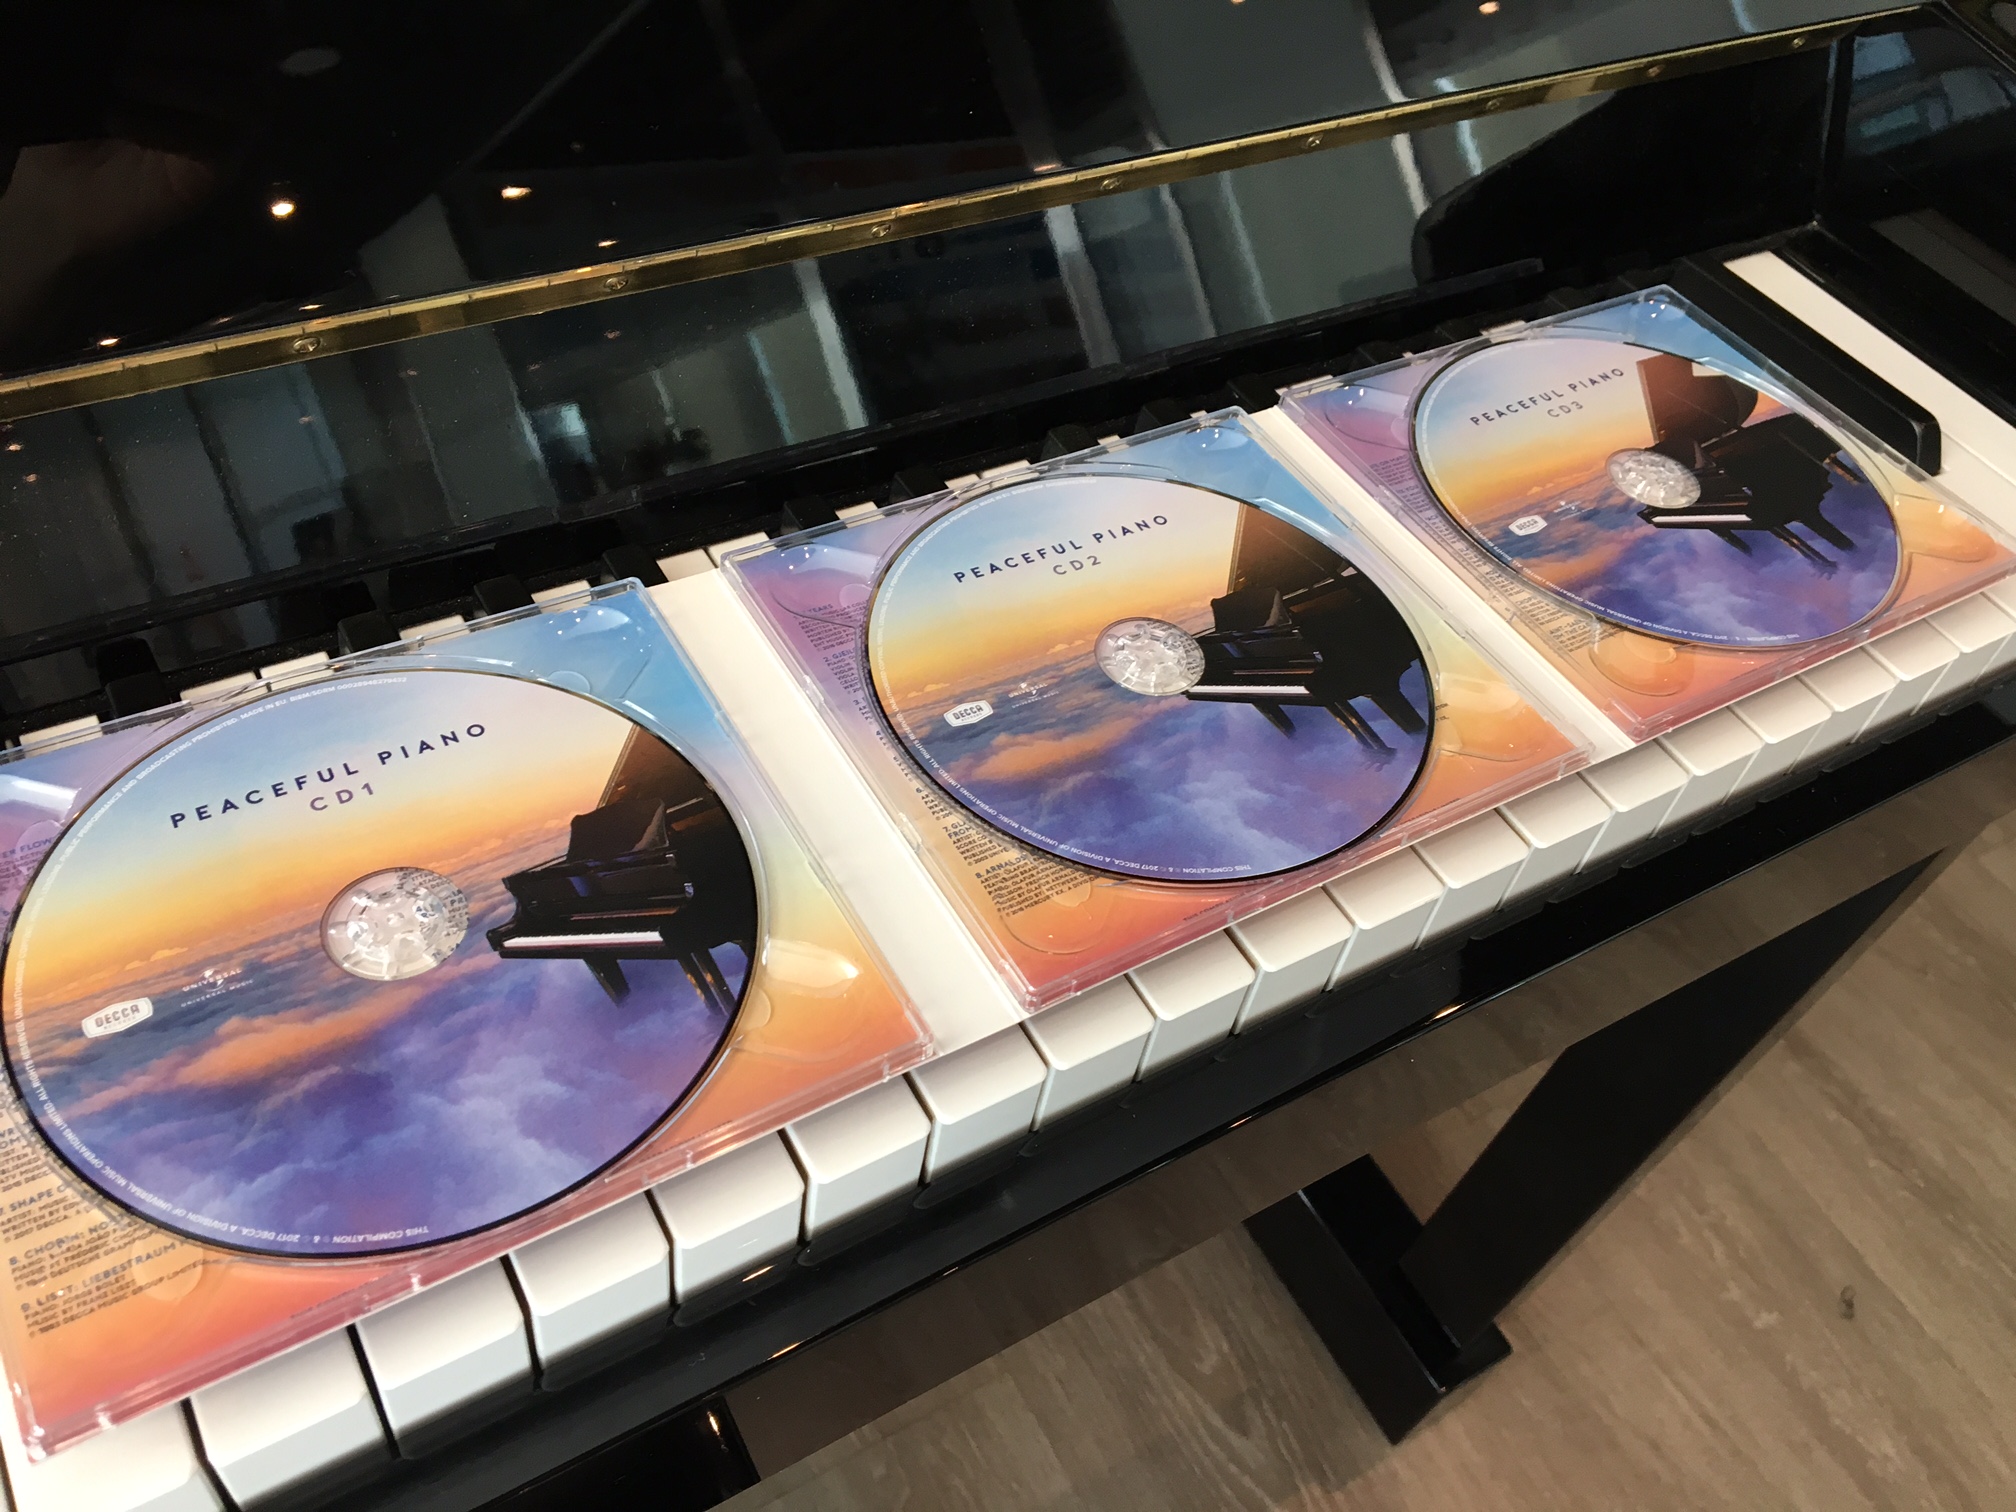 Peaceful Piano: oltre 3 ore di musica per pianoforte in 3 CD